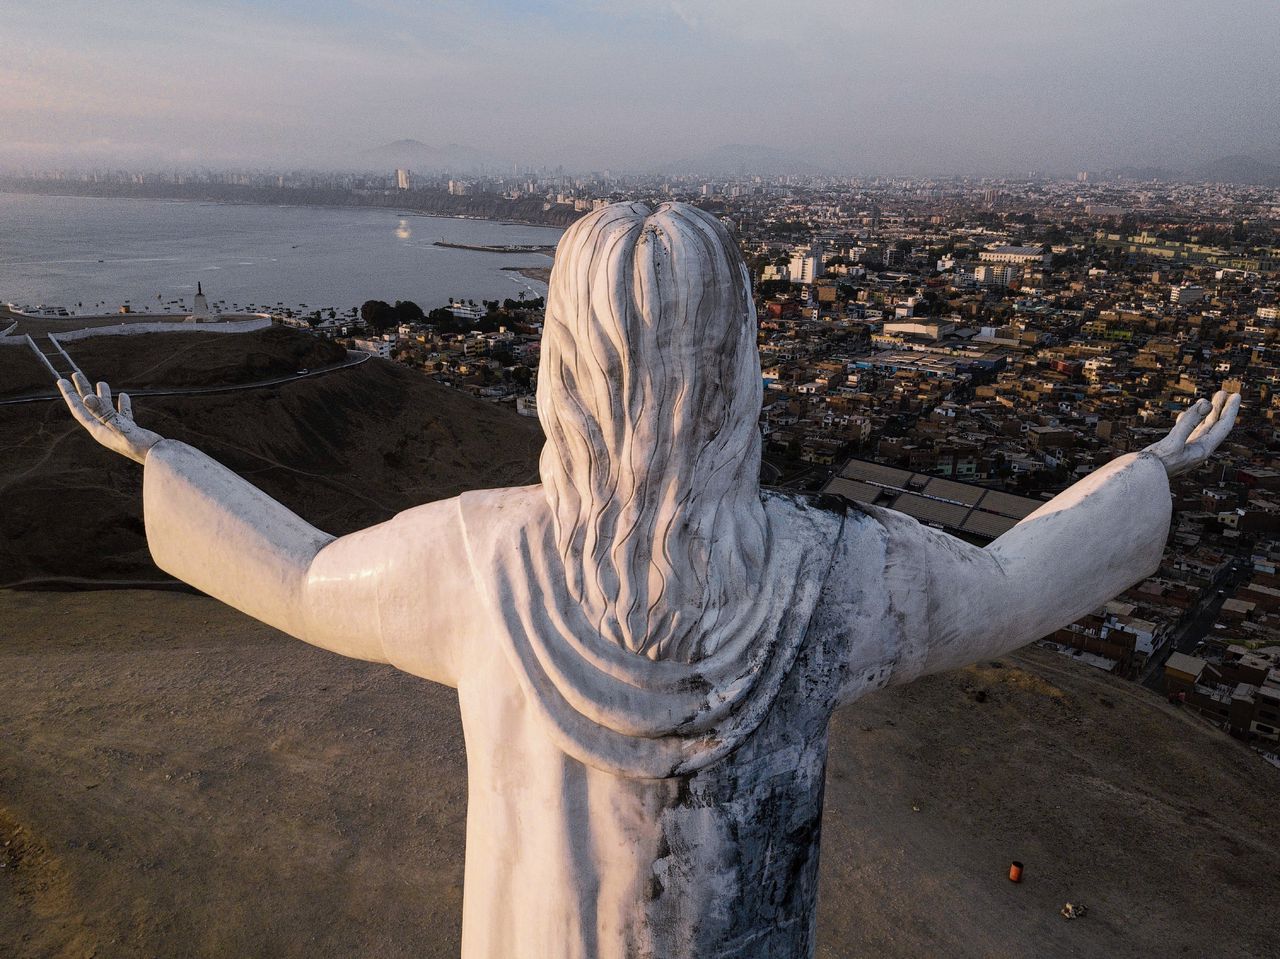 El Cristo del Pacífico in Lima.